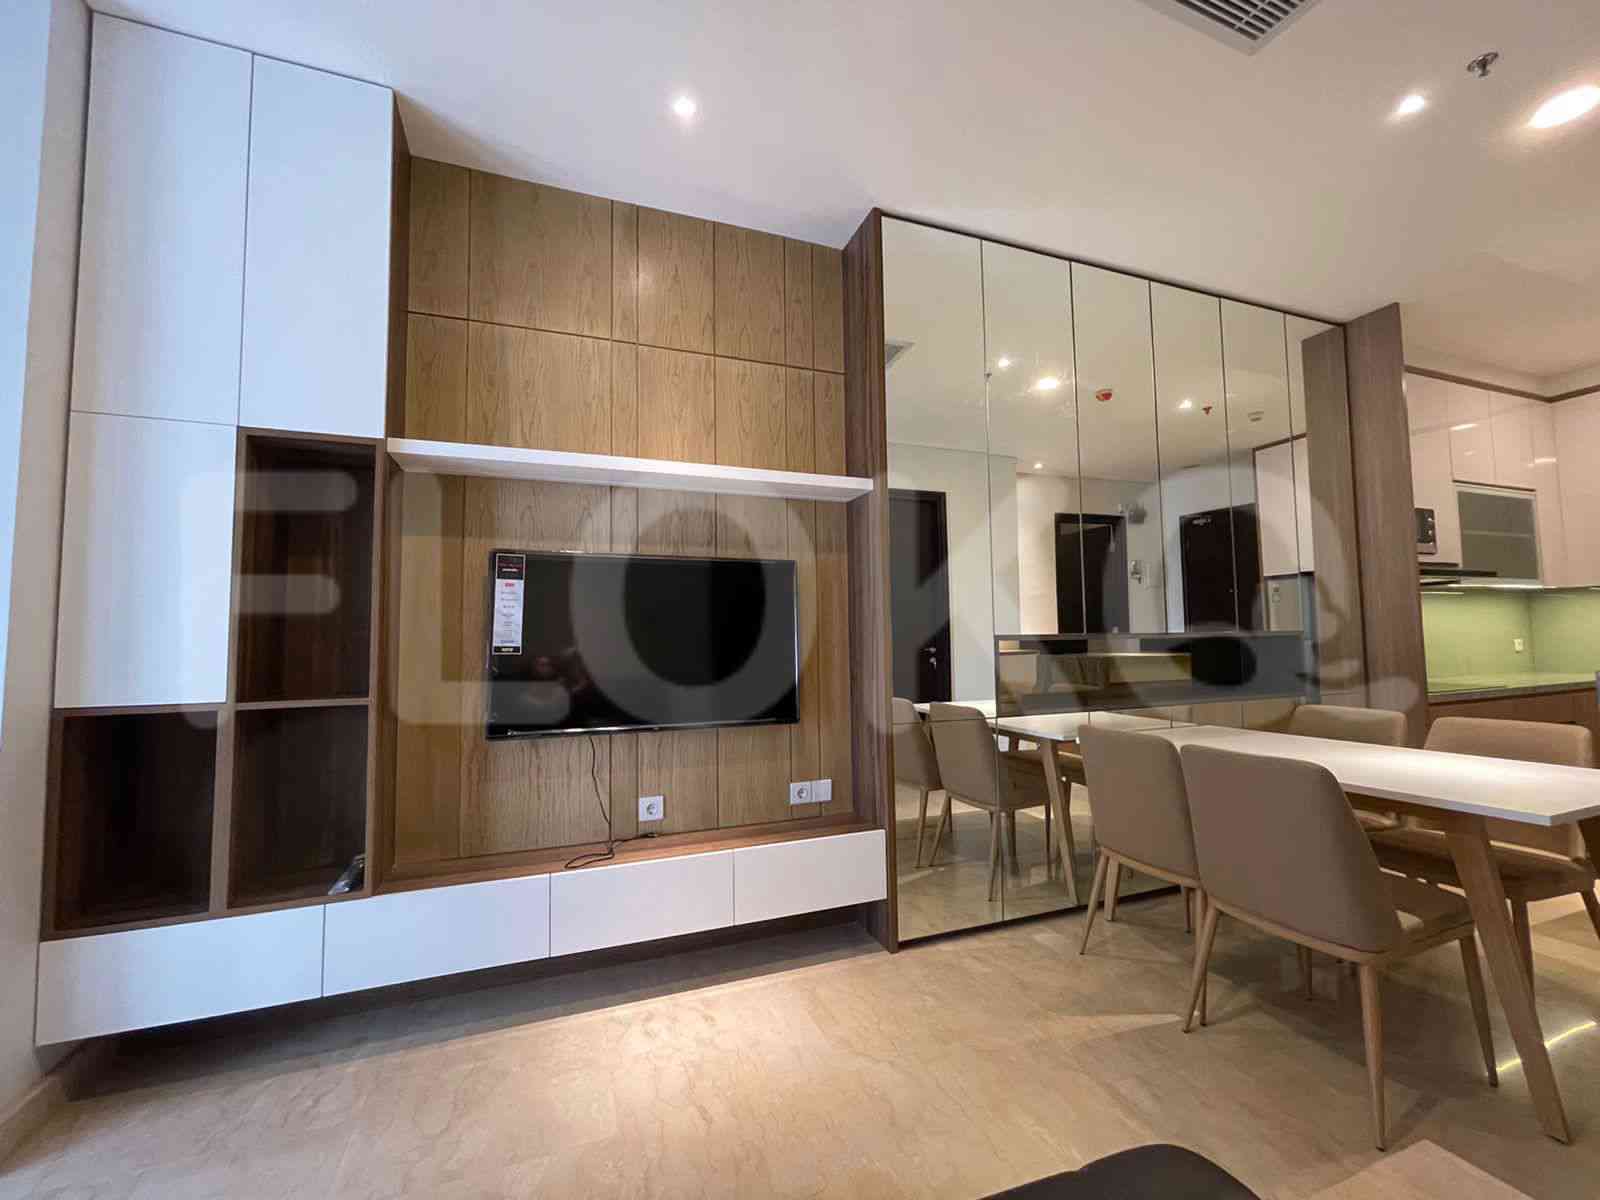 3 Bedroom on 10th Floor for Rent in Sudirman Suites Jakarta - fsuaf7 1